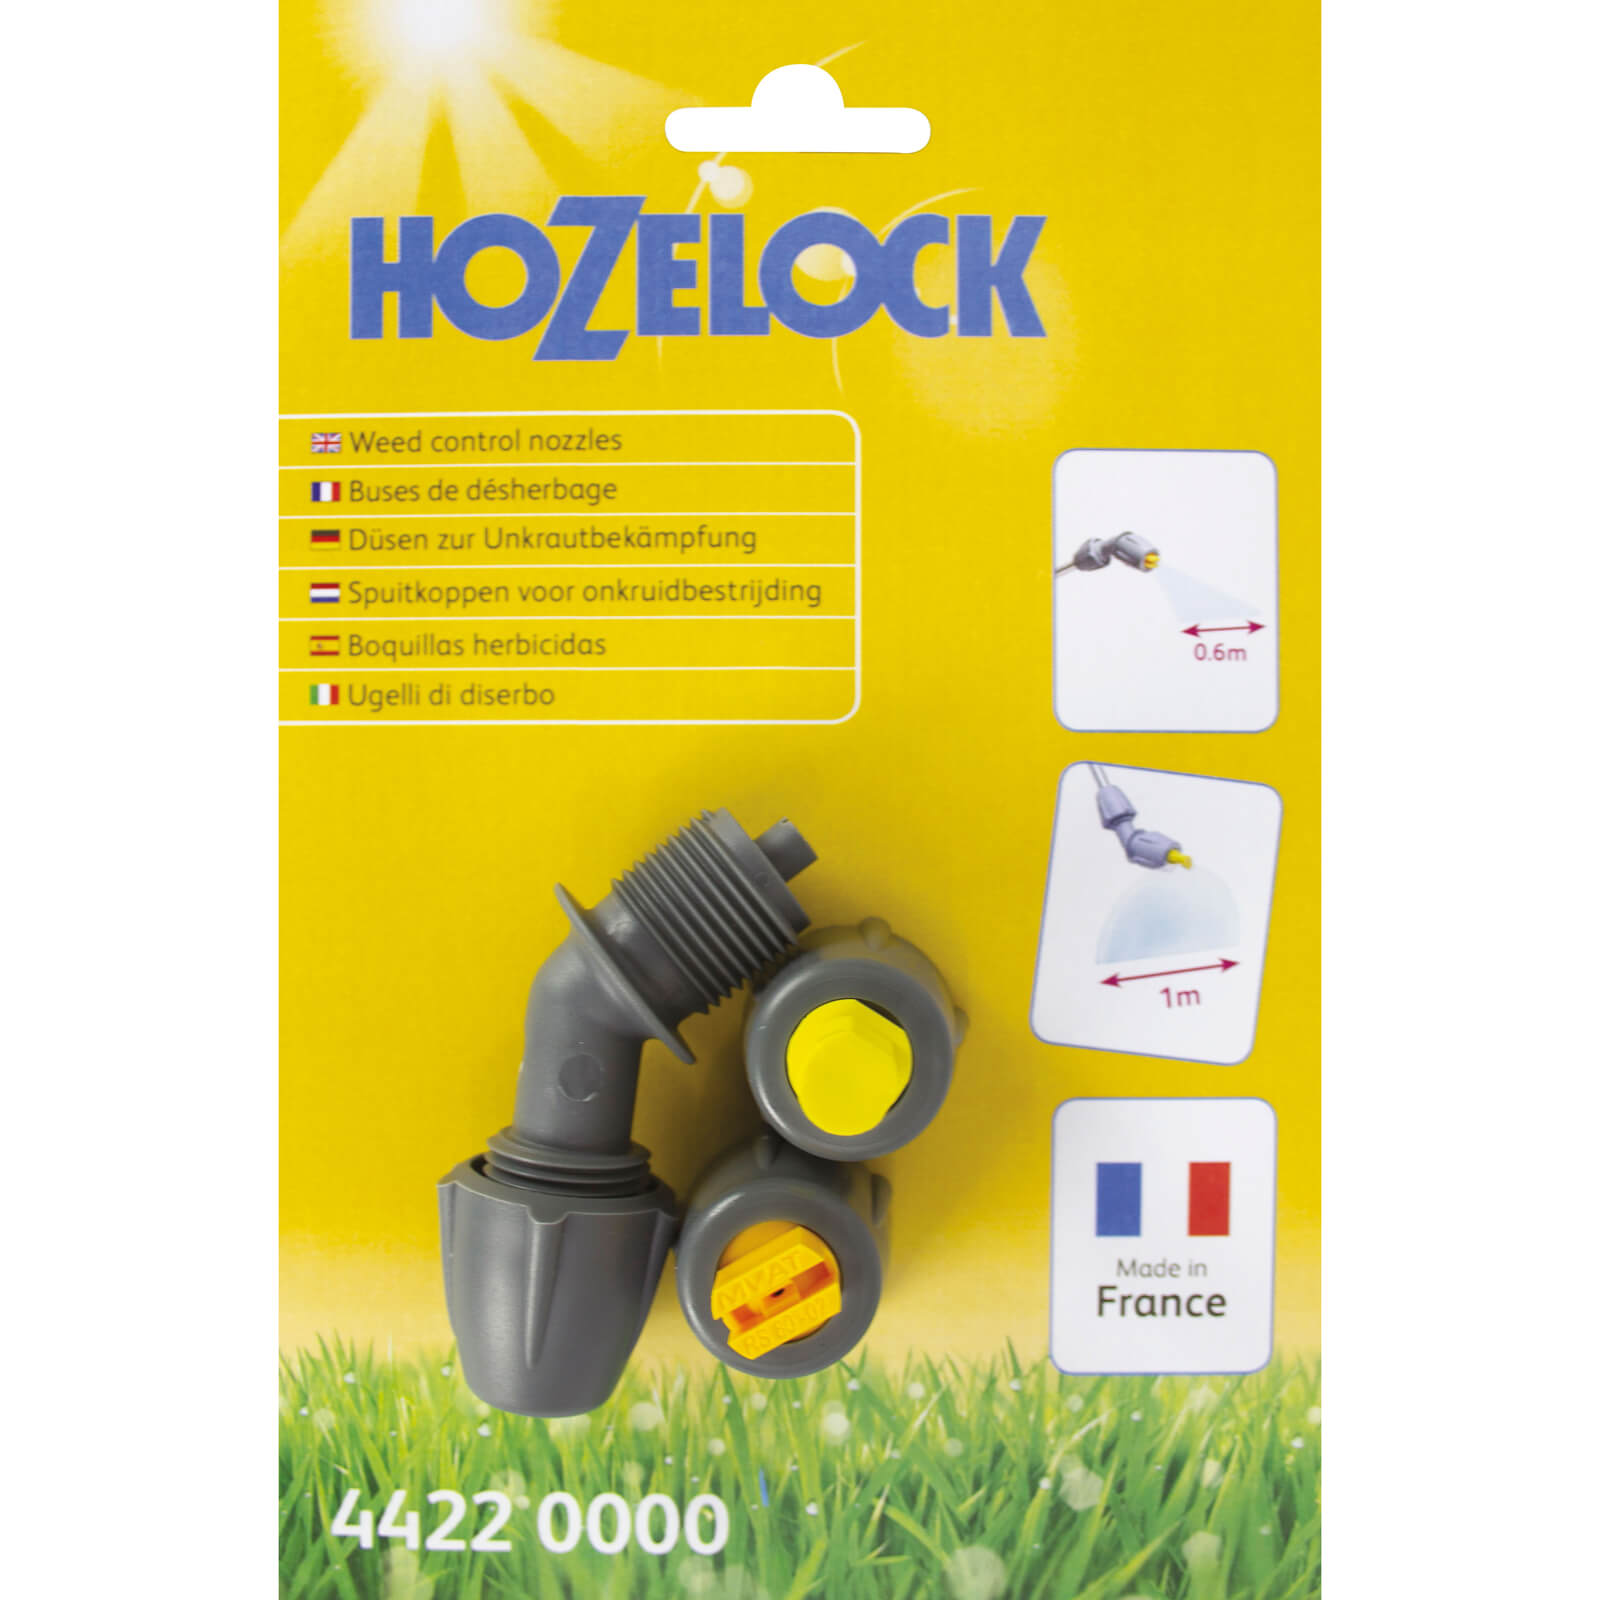 Image of Hozelock Weeding Nozzle Kit for Pressure Sprayers